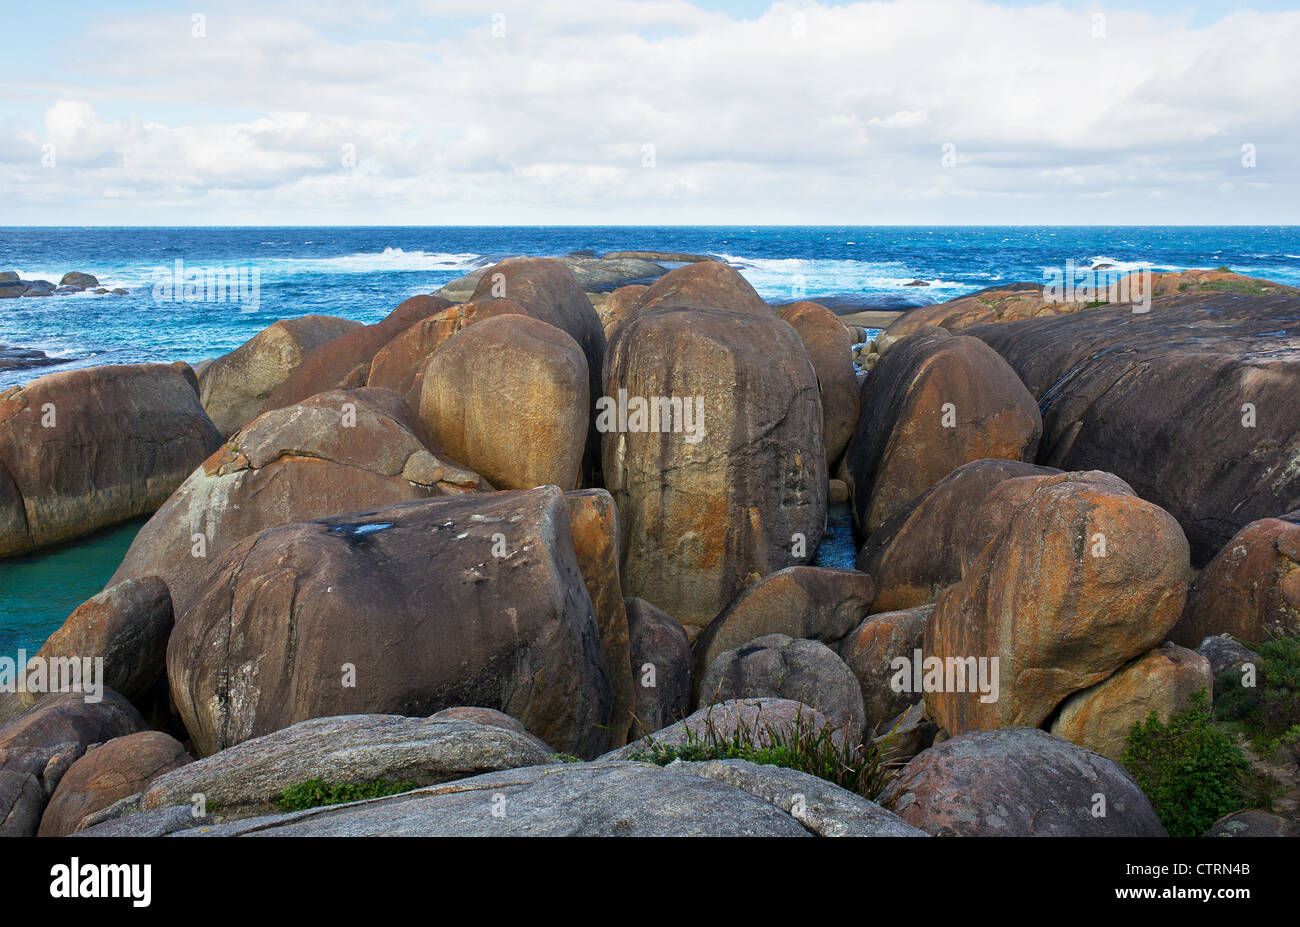 Elephant Rocks à Elephant Cove dans la William Bay National Park Australie Occidentale Banque D'Images